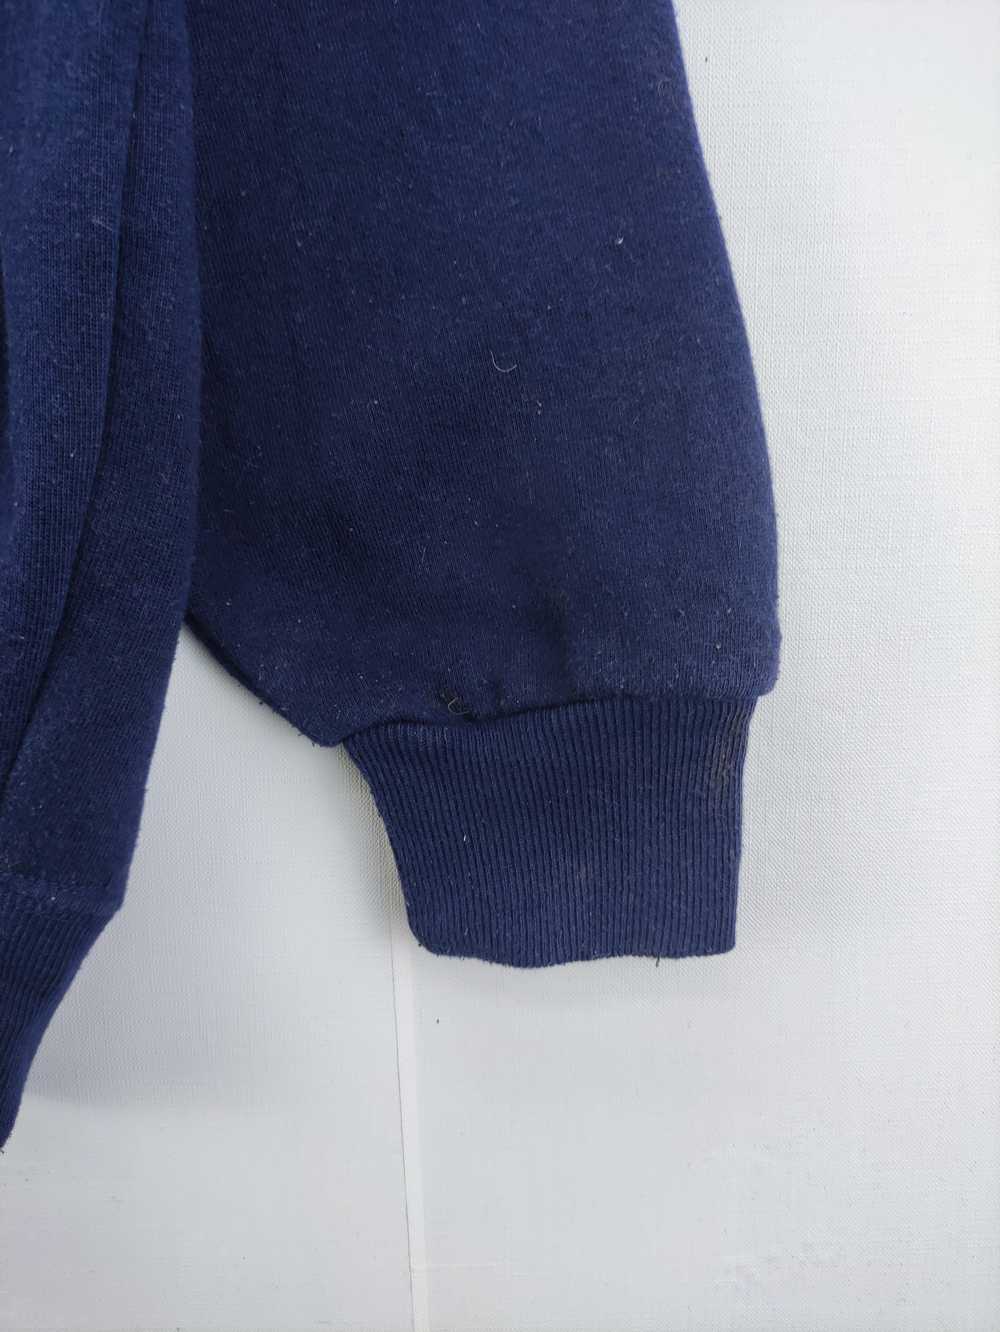 Vintage Sweatshirt Hoodie By Lock Haven - image 3